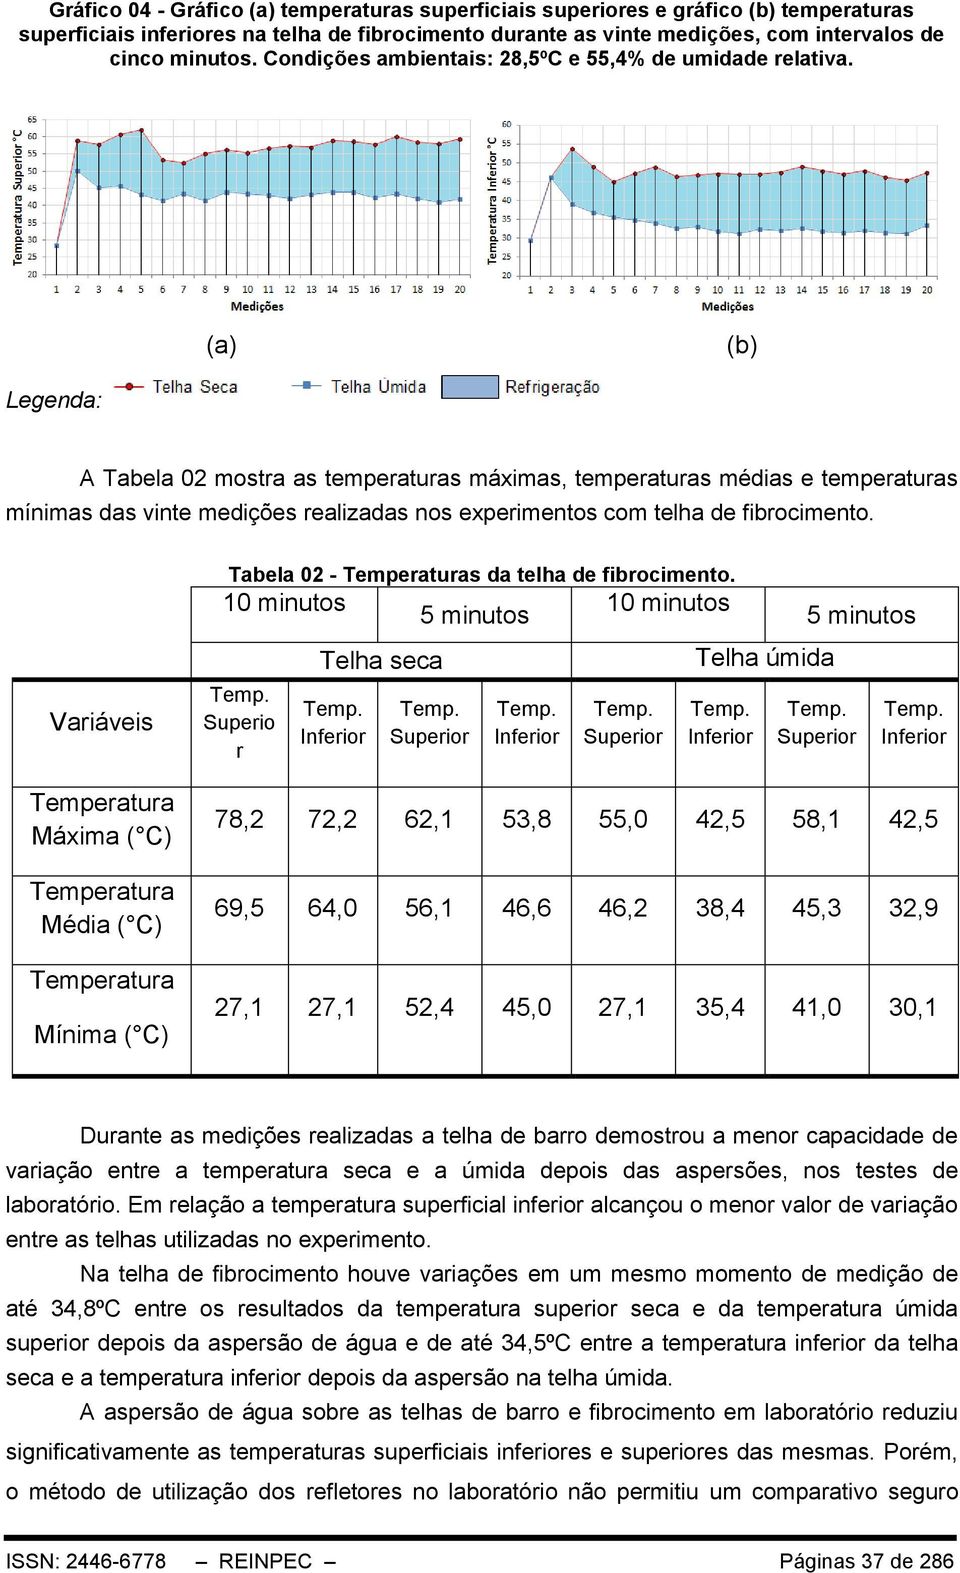 A Tabela 02 mostra as temperaturas máximas, temperaturas médias e temperaturas mínimas das vinte medições realizadas nos experimentos com telha de fibrocimento.